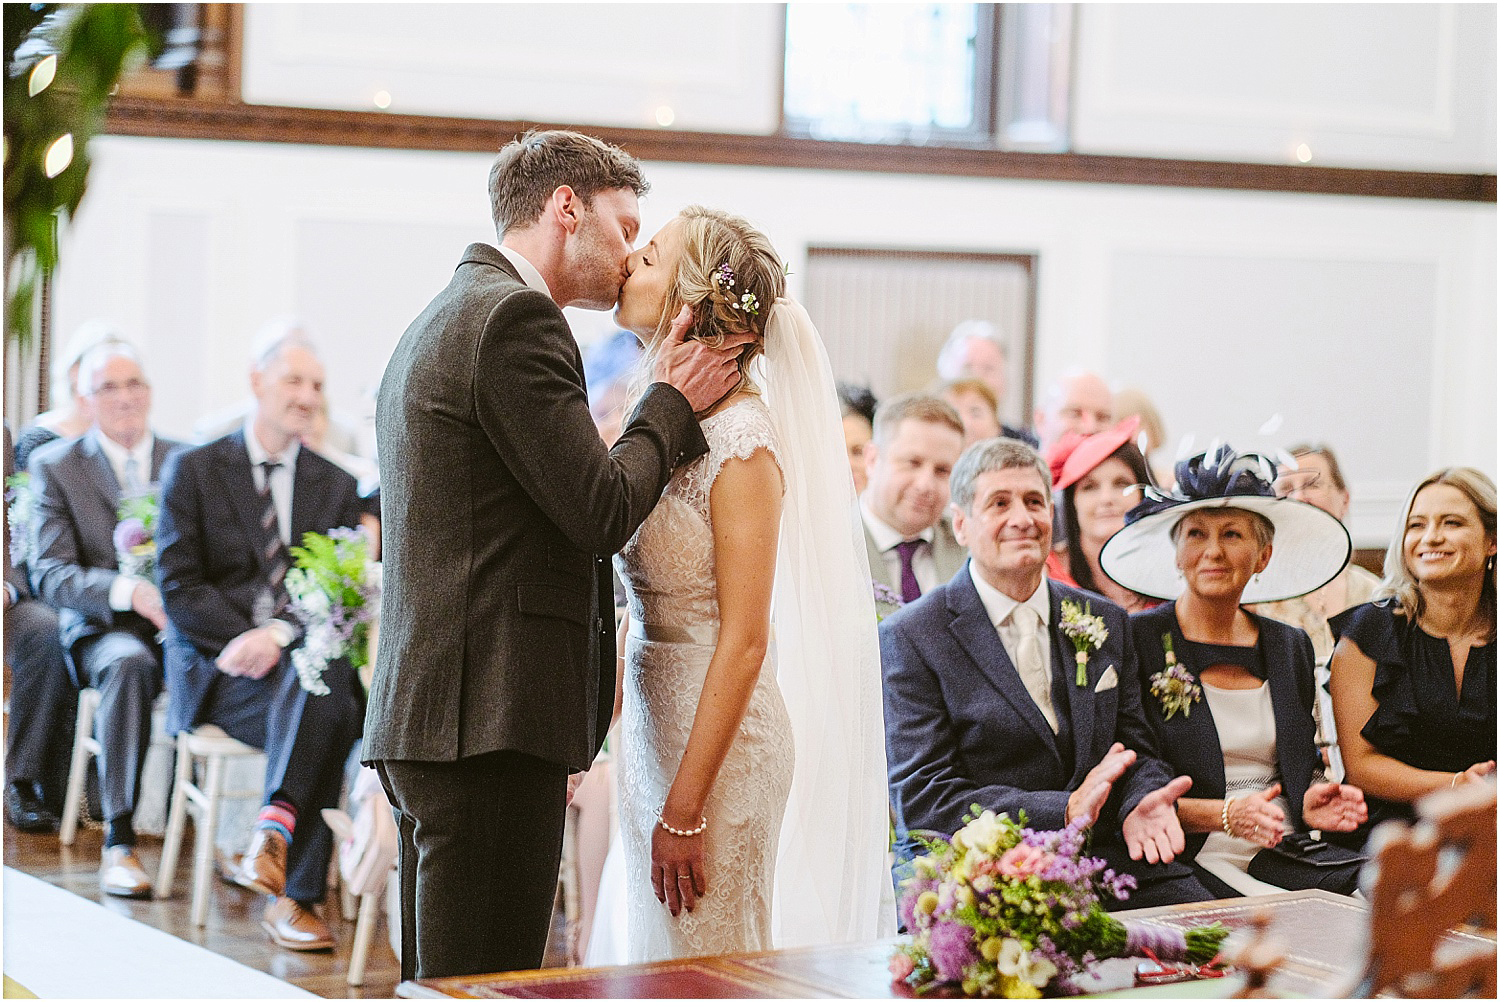 Beamish Hall wedding photography - Laura and Richard_0042.jpg